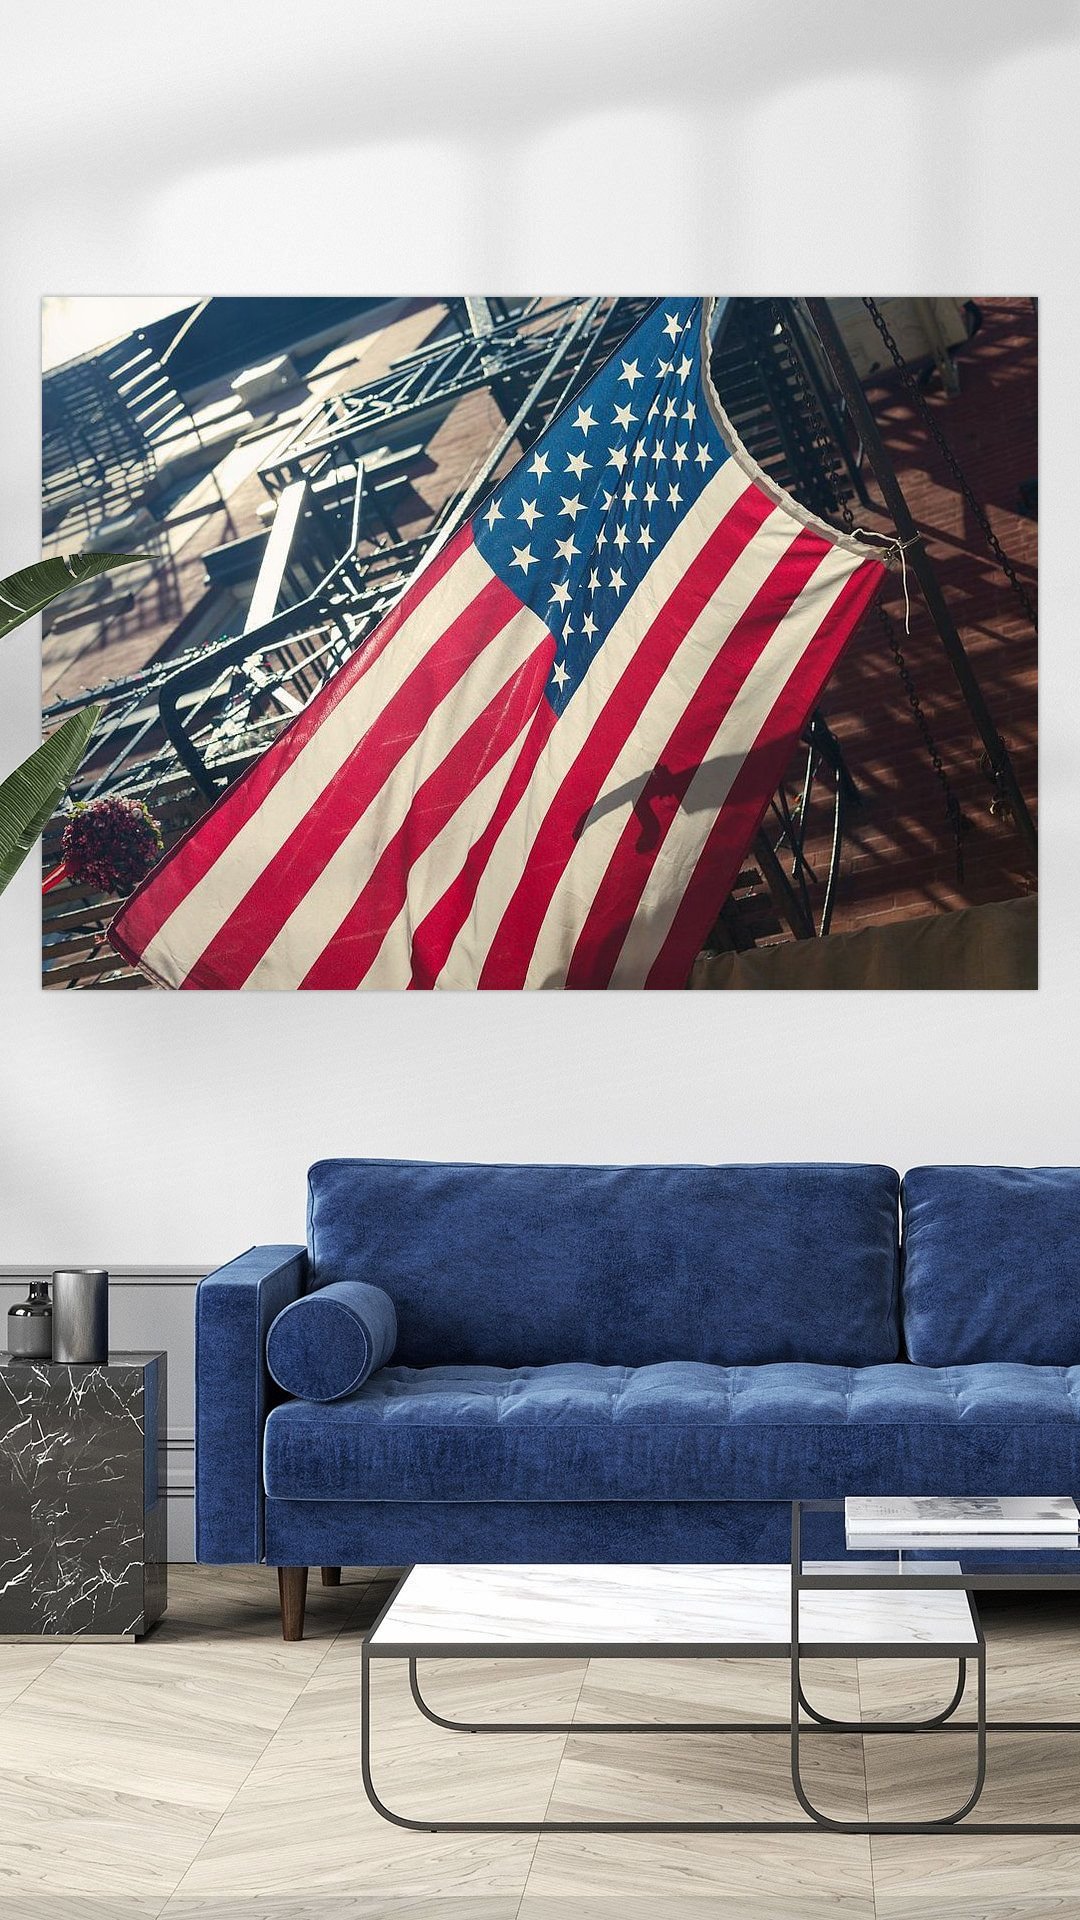 Werk aan de Muur-730519-Vlag USA New York-Marcel Kerdijk-1080x1920-Livingroom - Touch of Blue-instagramReel.jpg